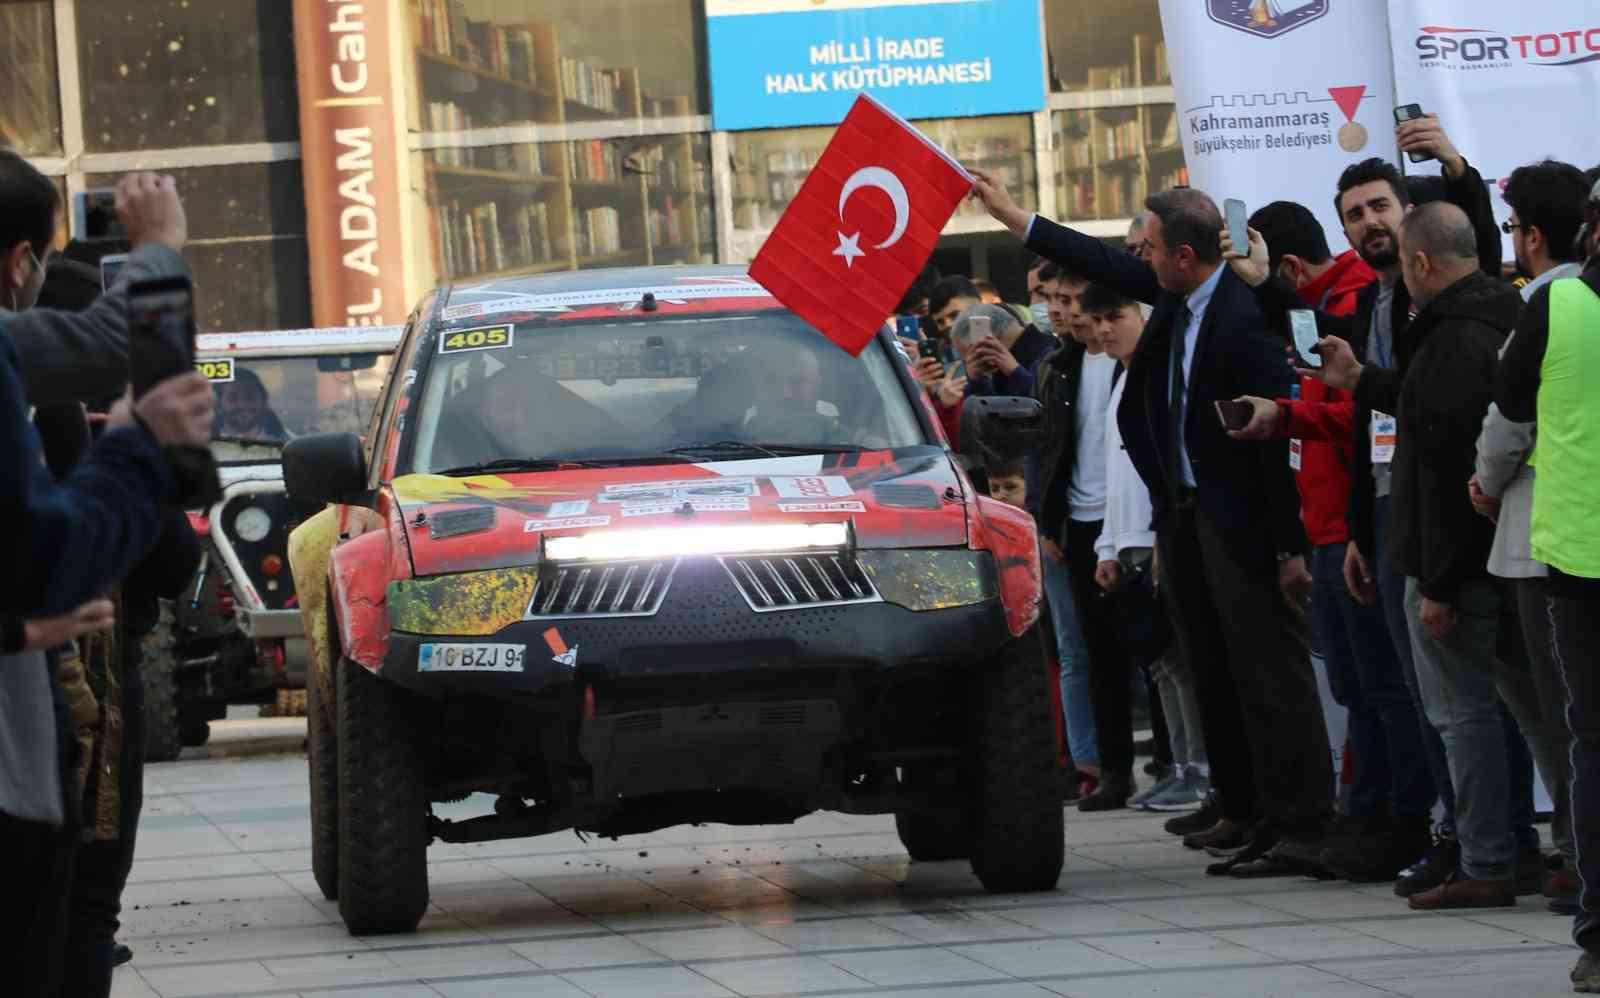 Türkiye Off-Road Şampiyonası öncesi yarışmacılar gösteri yaptı #kahramanmaras